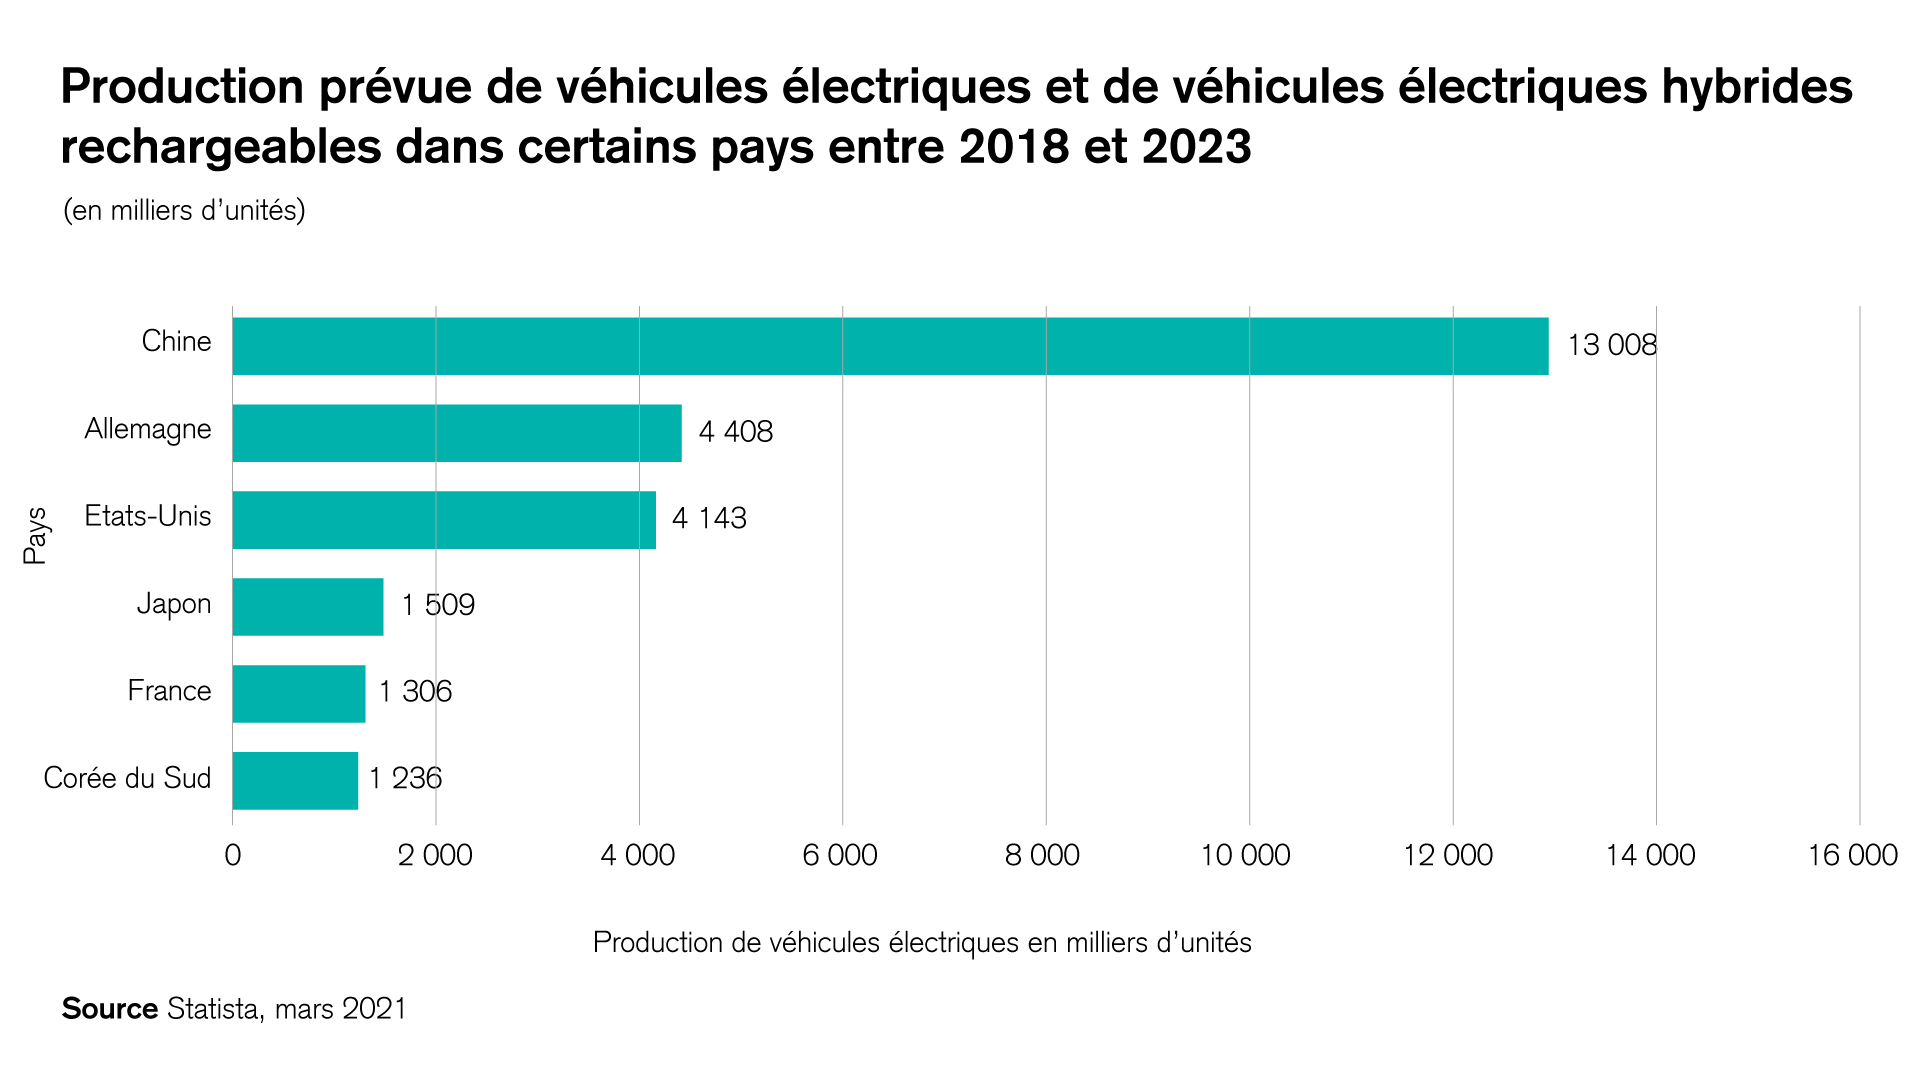 Production prévue de véhicules életriques et de véhicules électriques hybrides rechargeables dans certains pays 2018 et 2023